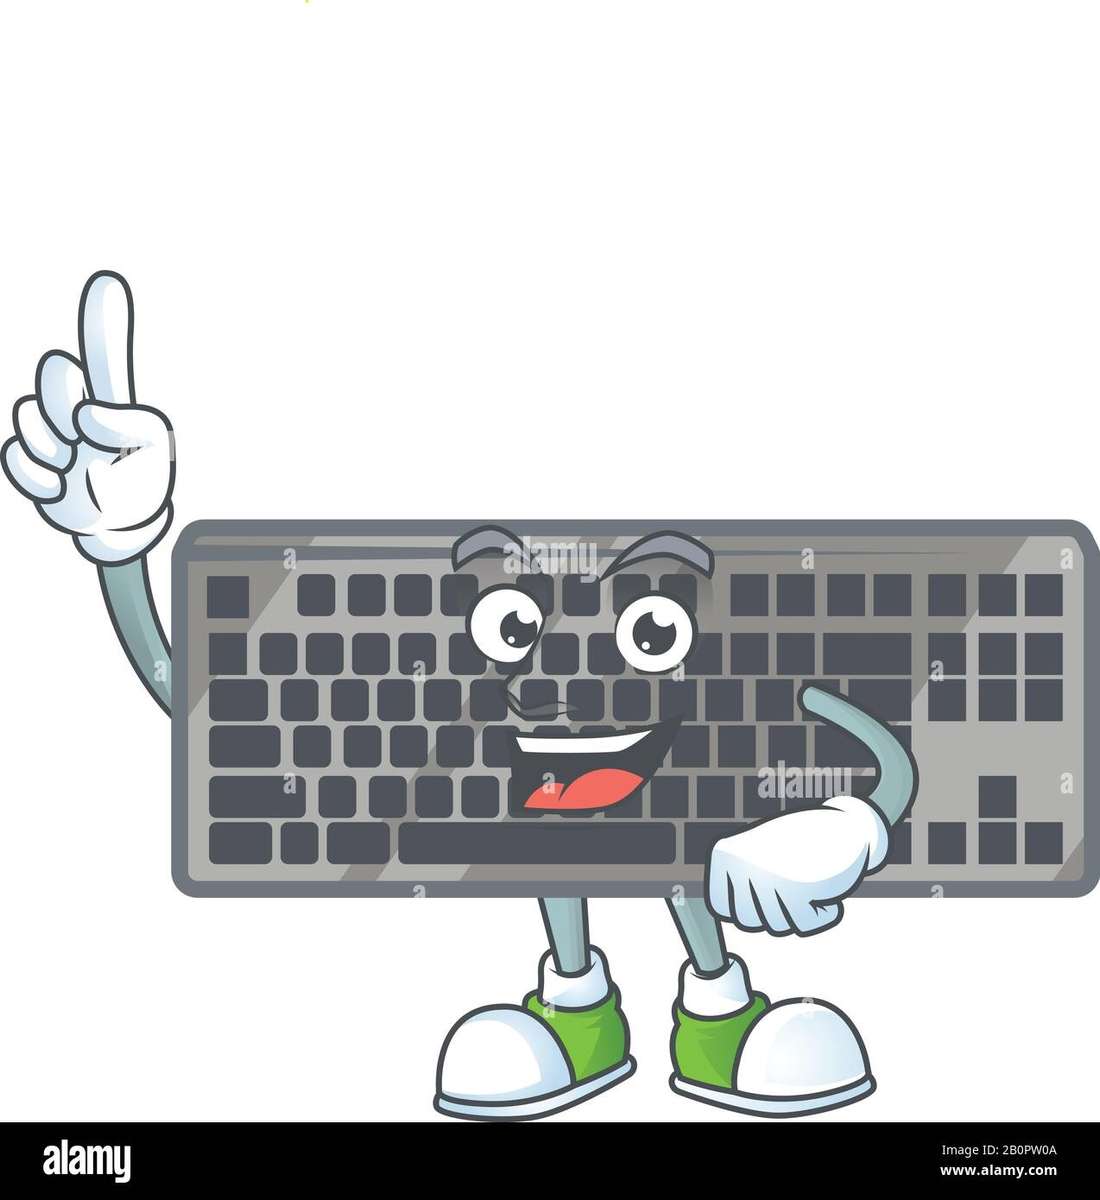 клавиатура для детей, комплектующие для компьютера онлайн-пазл